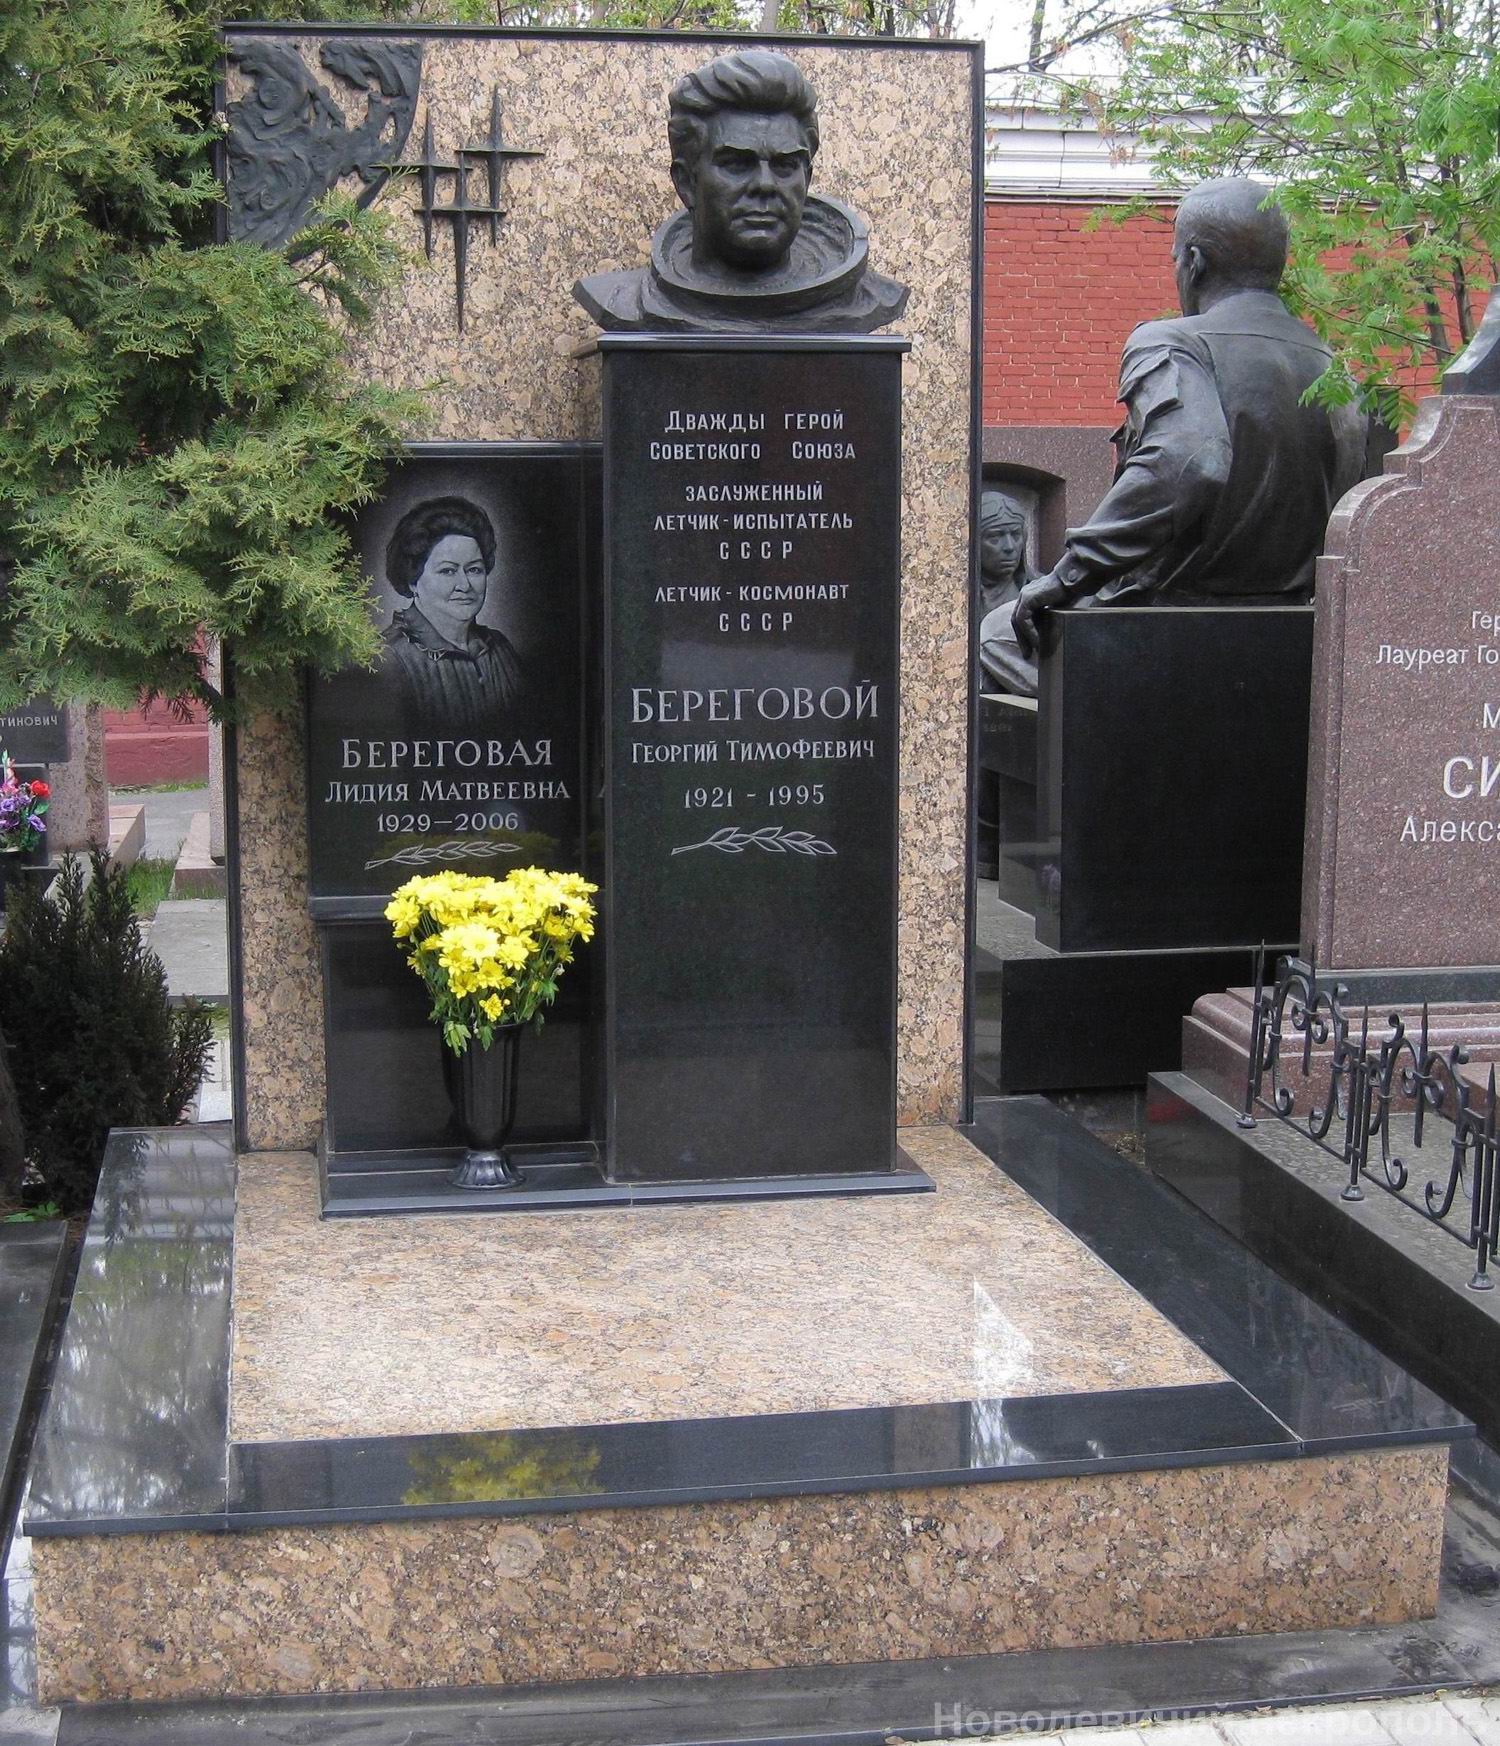 Памятник на могиле Берегового Г.Т. (1921-1995), ск. И.Бичко, на Новодевичьем кладбище (11-4-7).